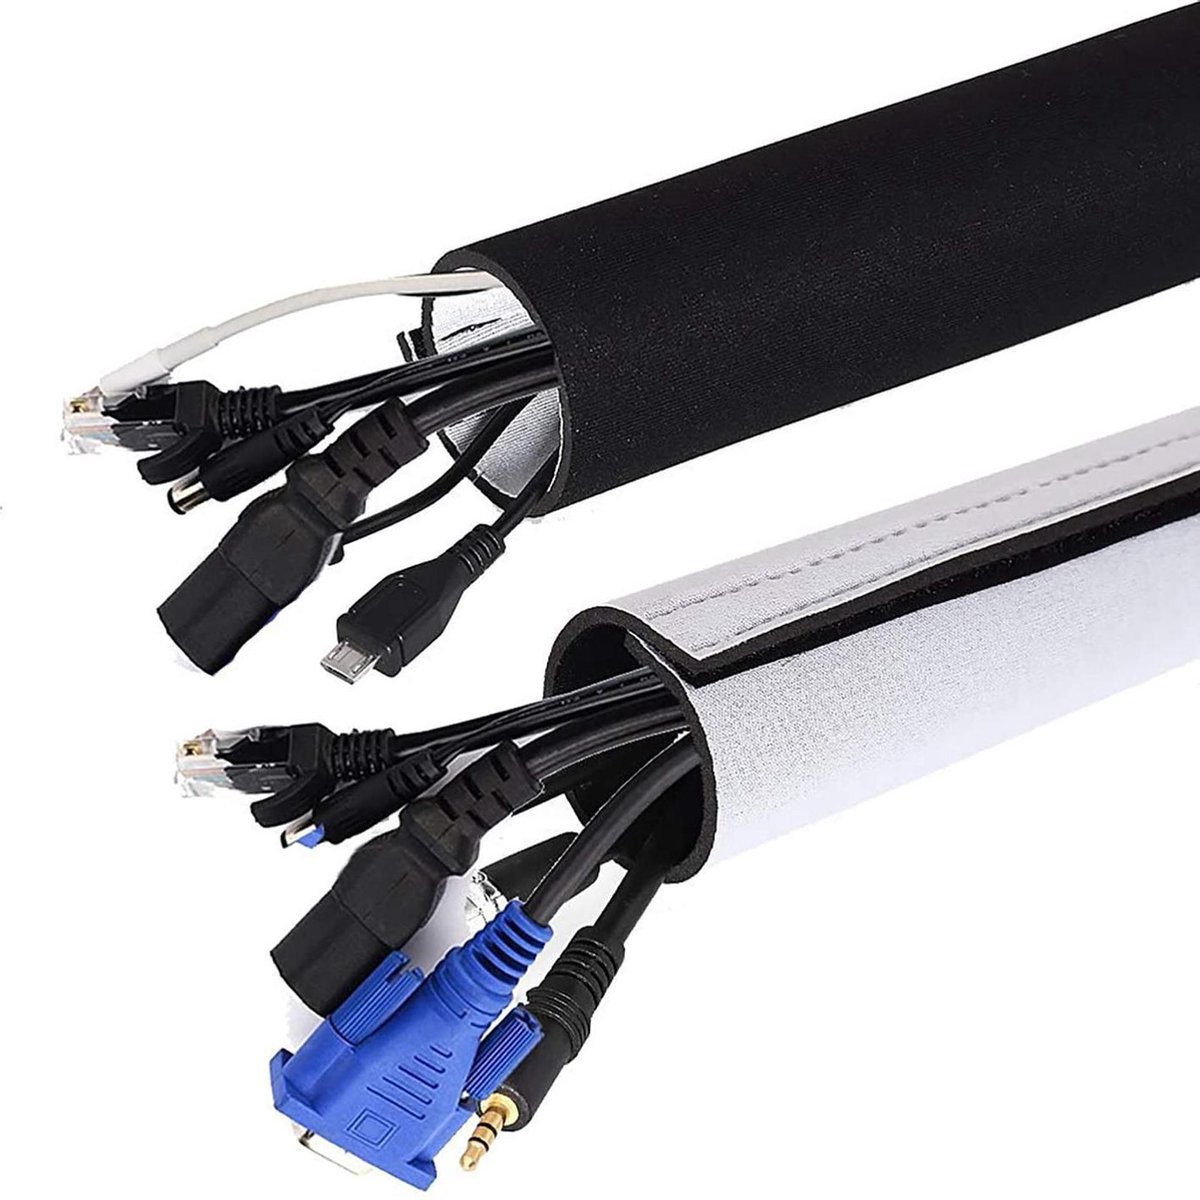 Universele Neopreen kabel organizer met klittenband, 2x1.5 M Verstelbaar en flexibel bedrading beschermer- TV, Computer, verlichting (150x13,5cm